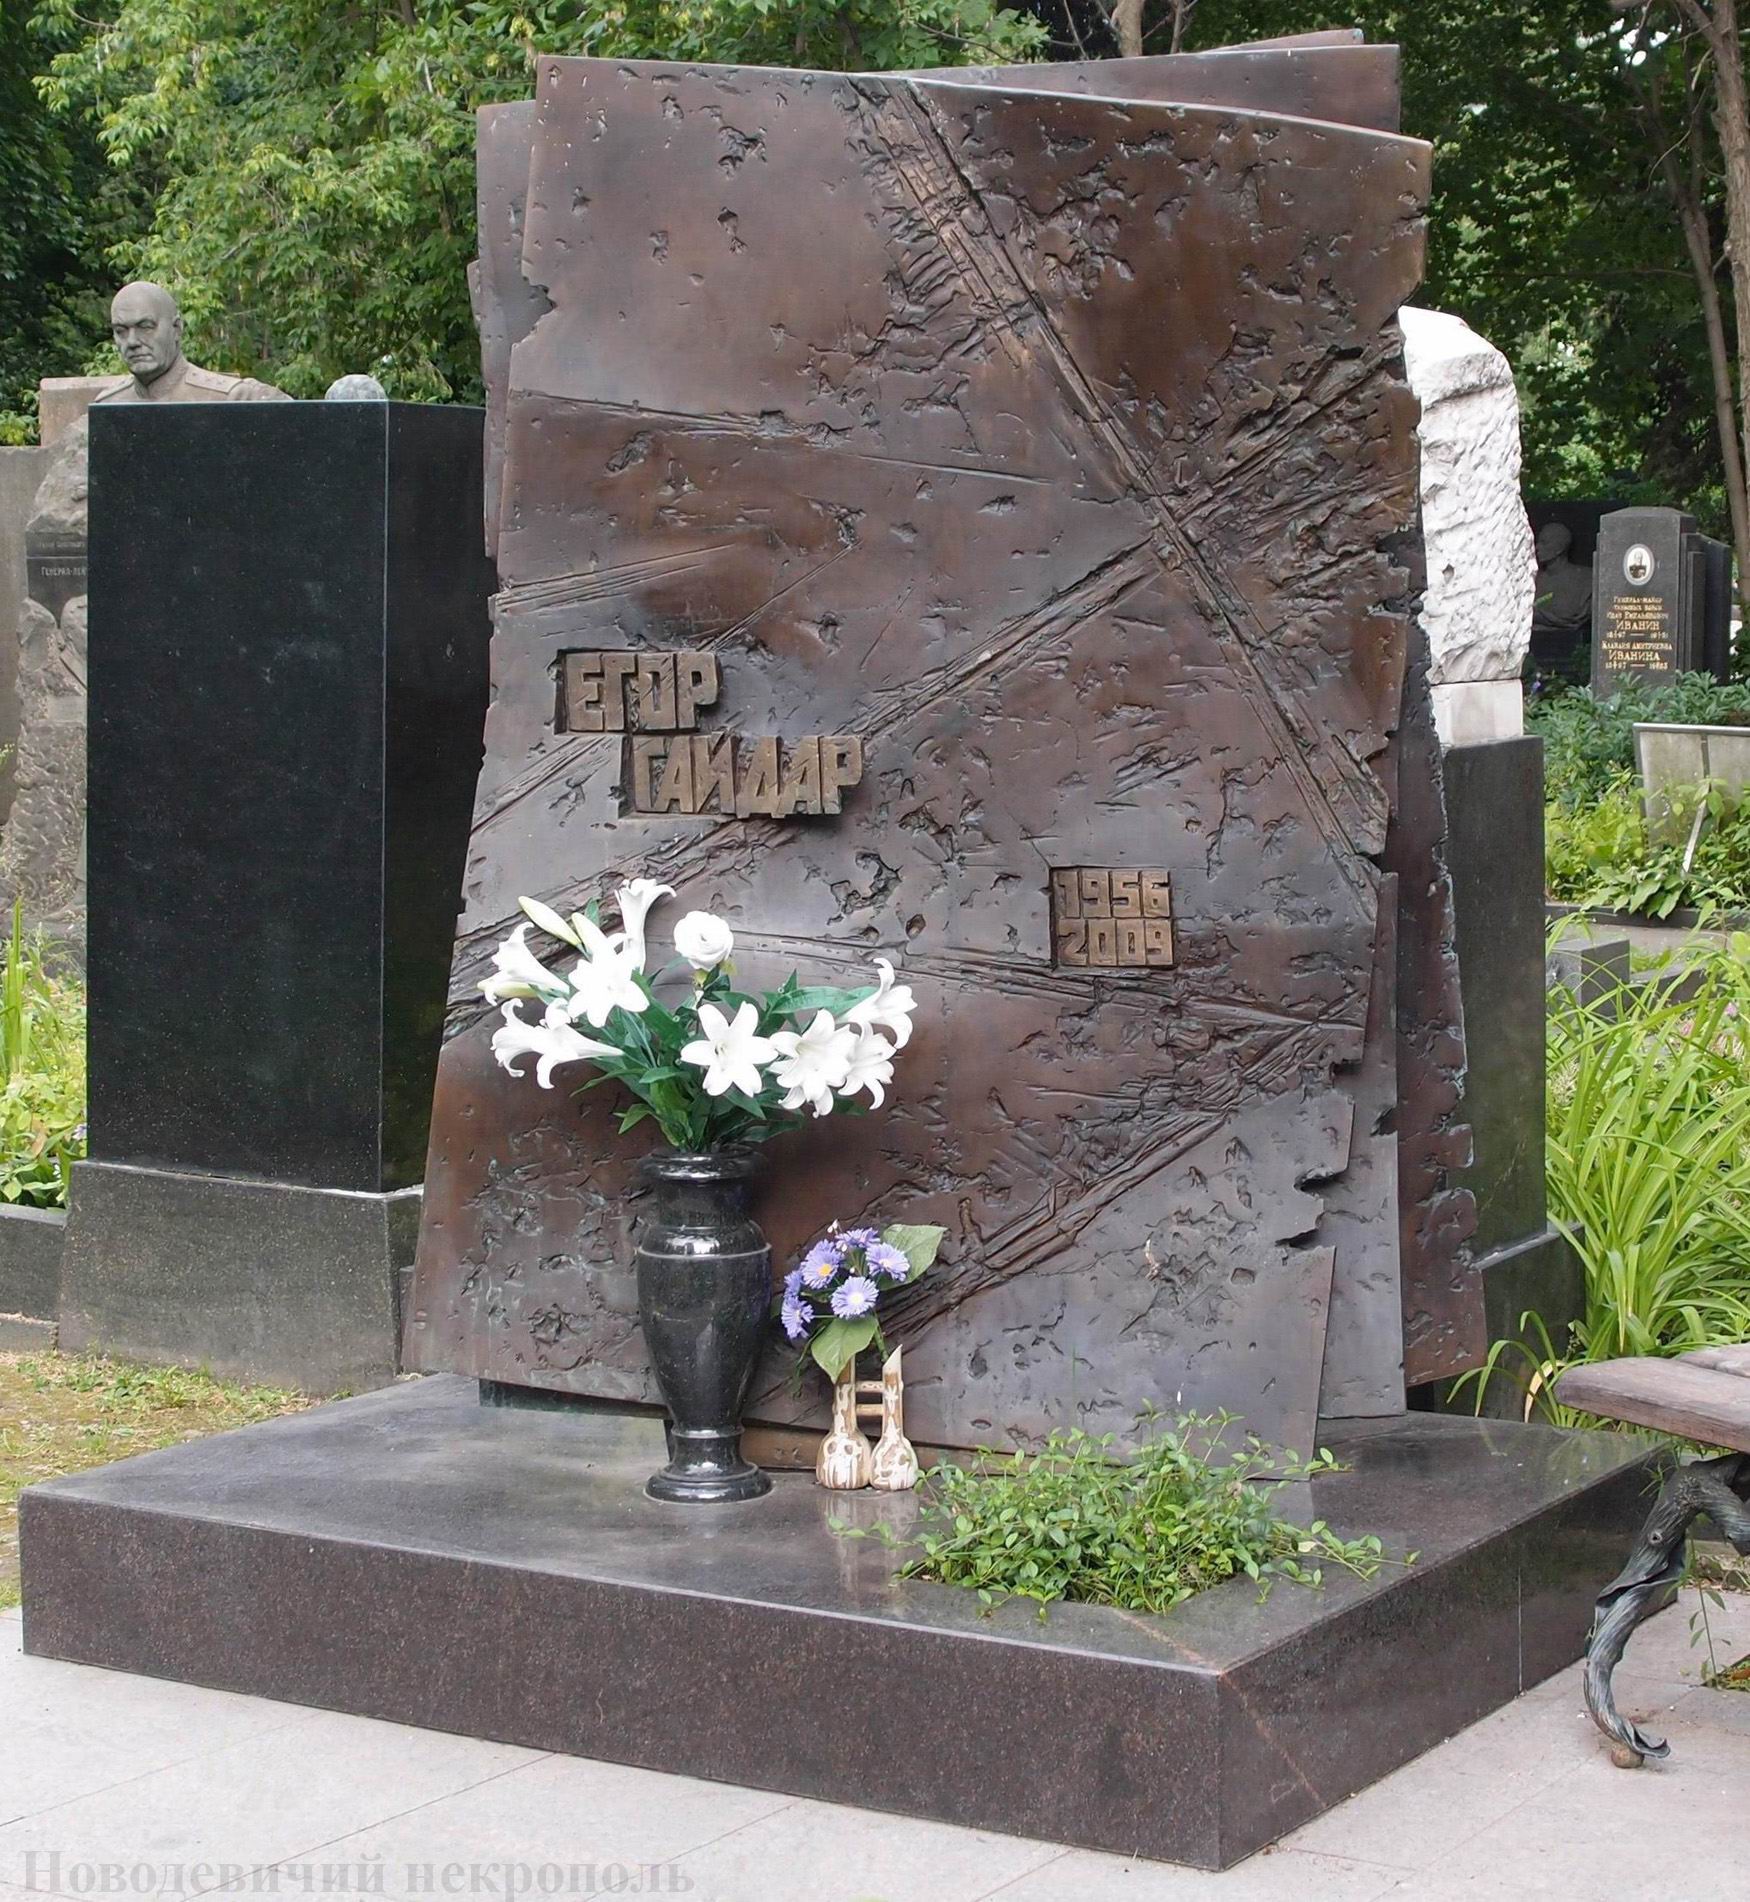 Памятник на могиле Гайдара Е.Т. (1956–2009), ск. А.Балашов, арх. В.Бухаев, на Новодевичьем кладбище (4–27–14).